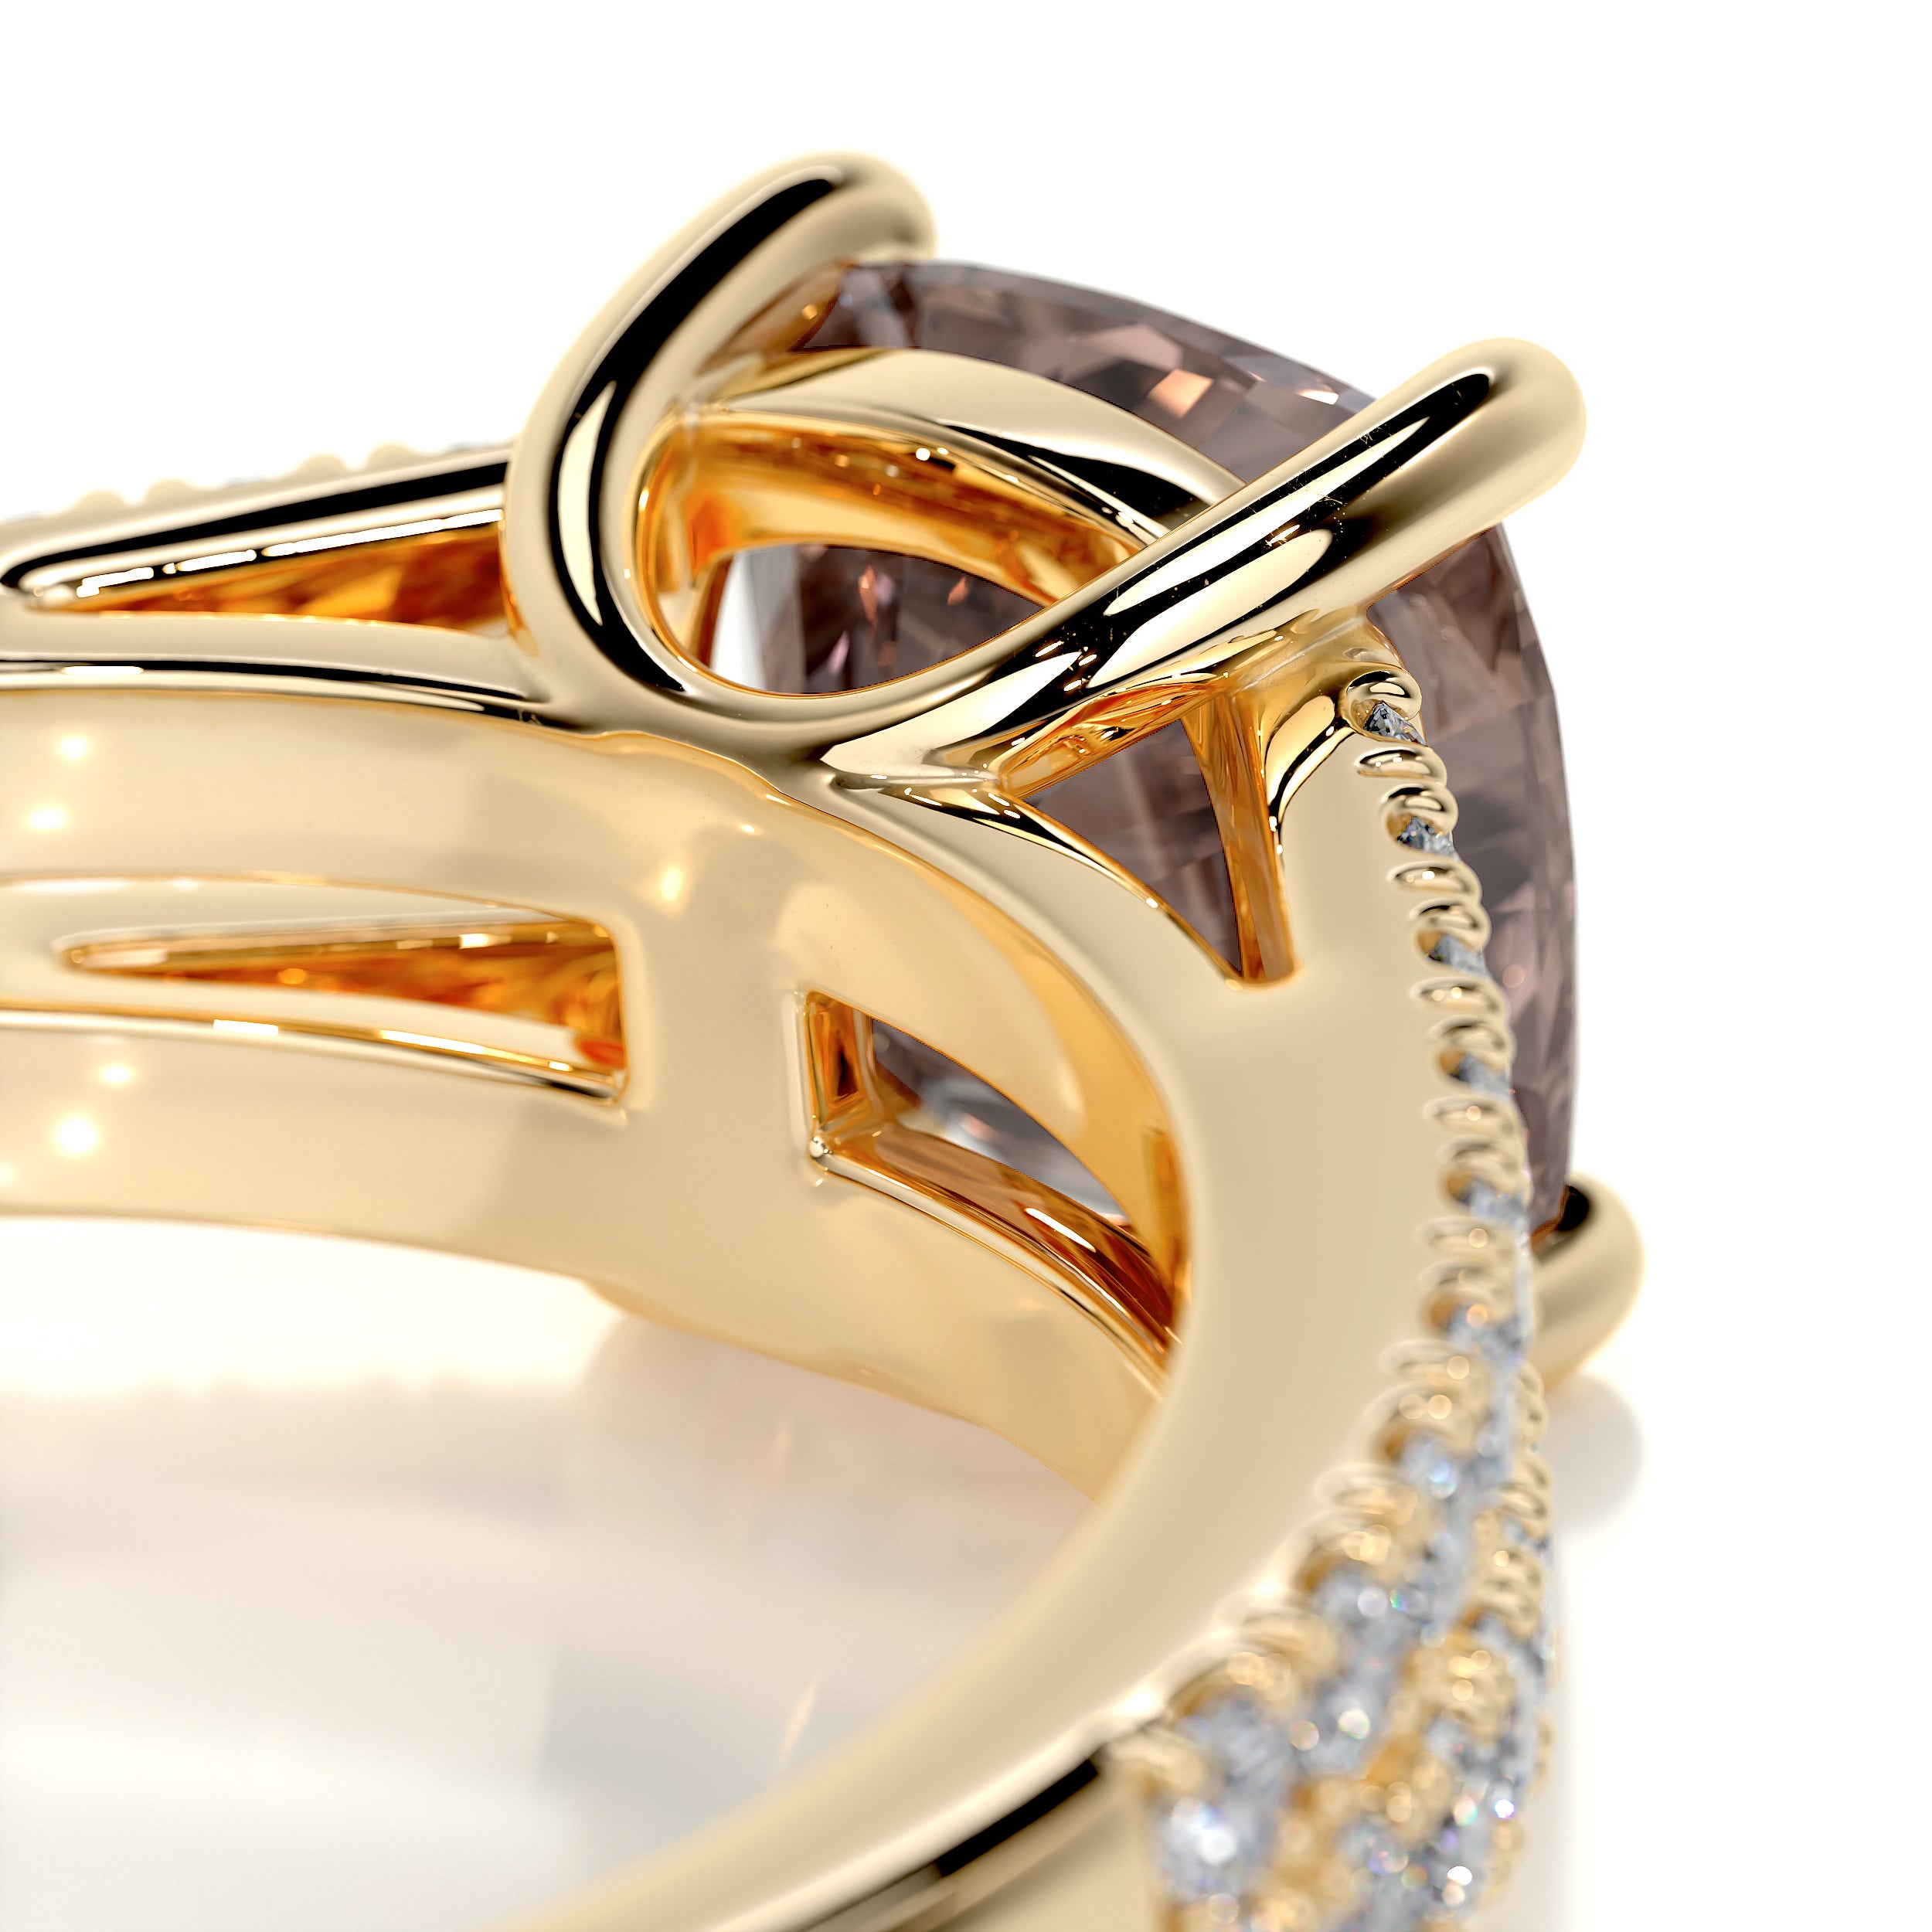 Sadie Gemstone & Diamonds Ring   (2 Carat) -18K Yellow Gold